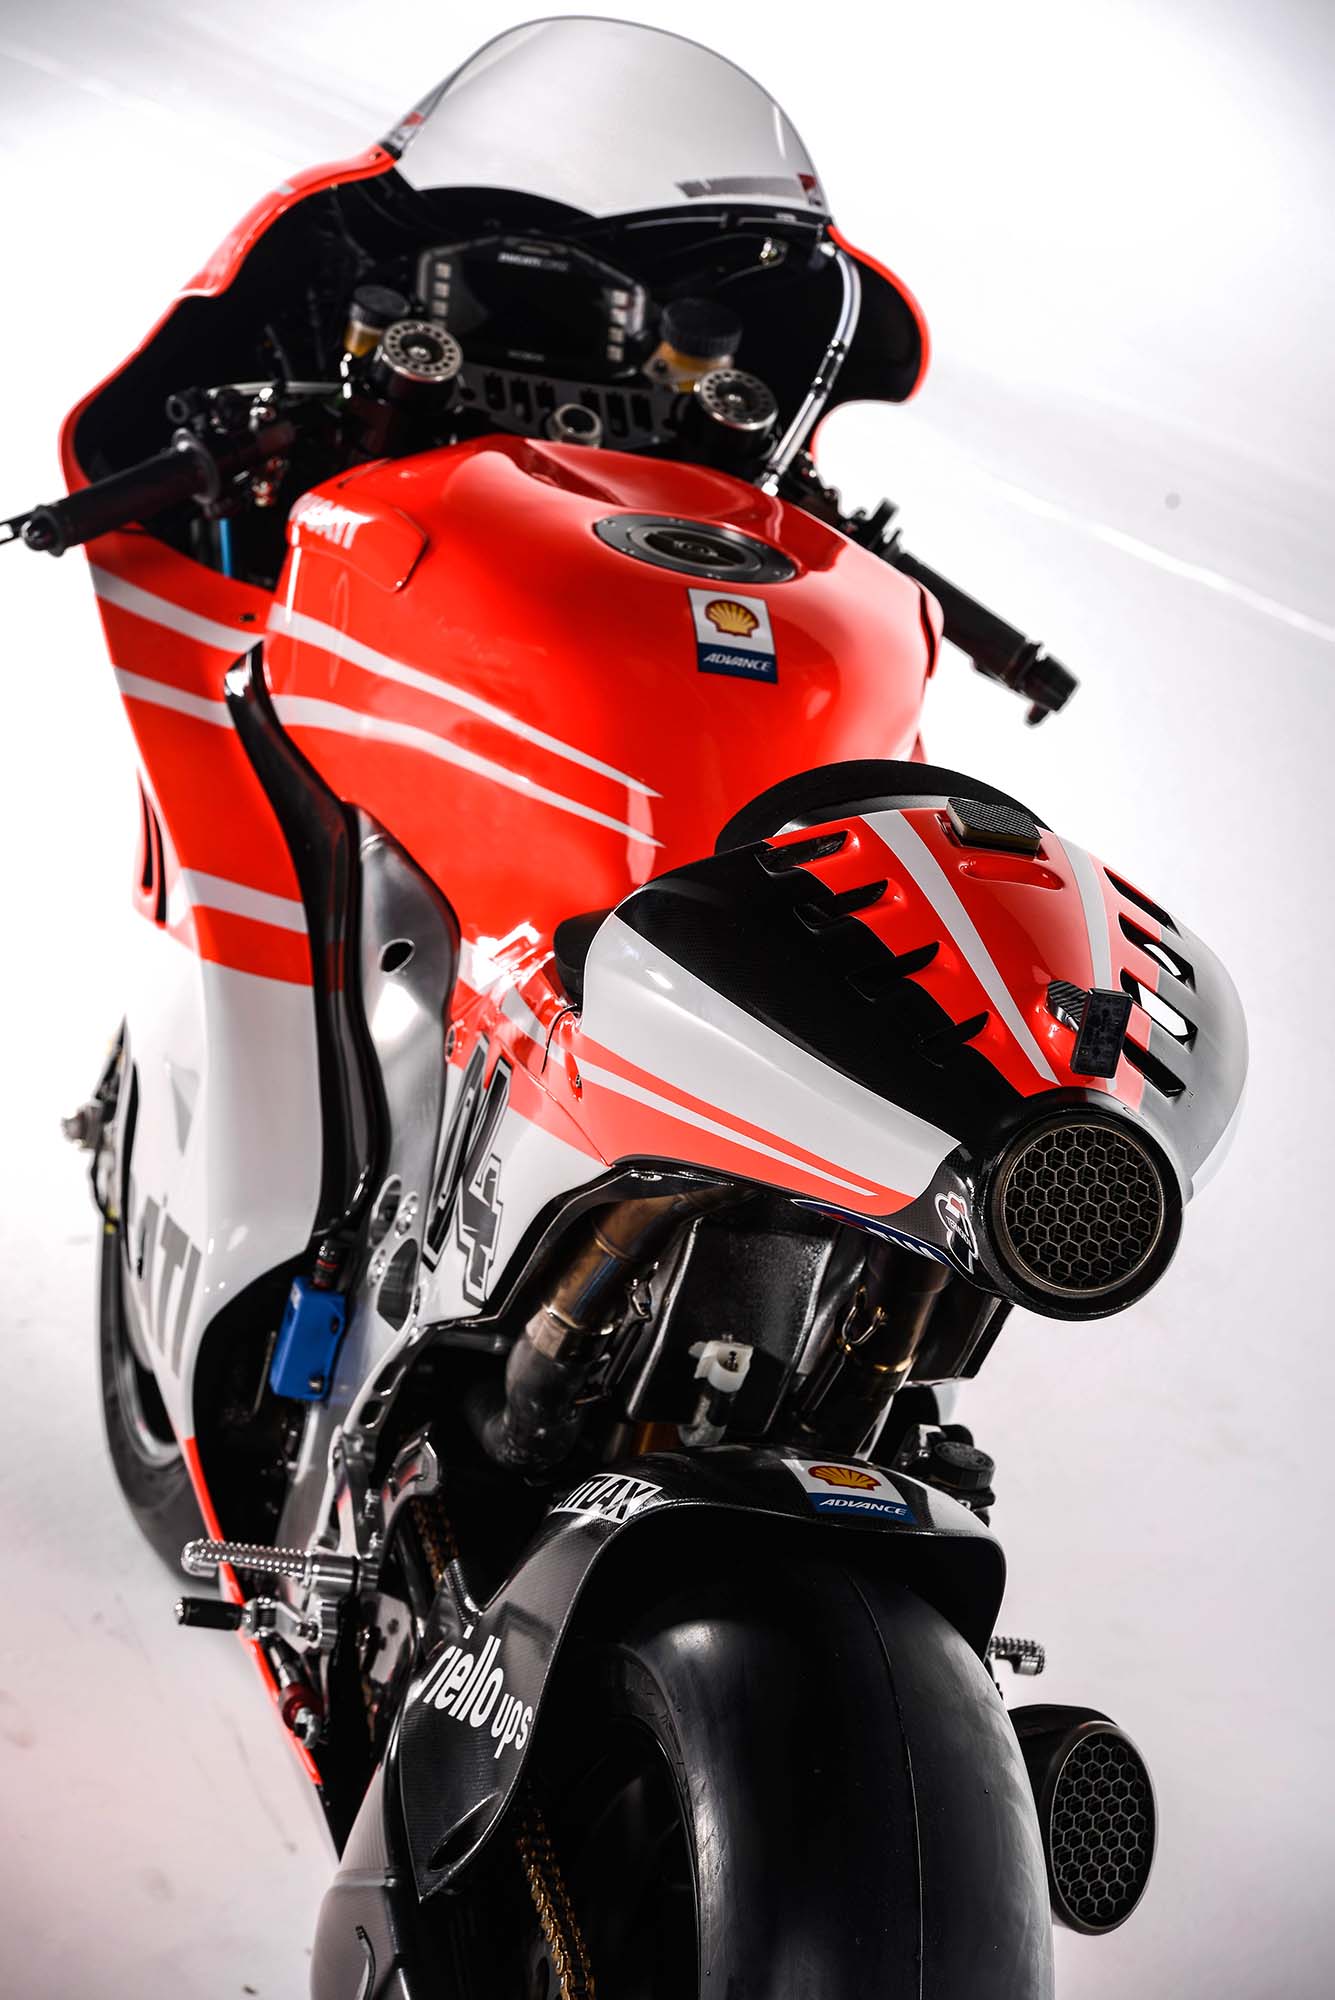 Koleksi Gambar Motor Ducati Gp Terlengkap Stamodifikasi